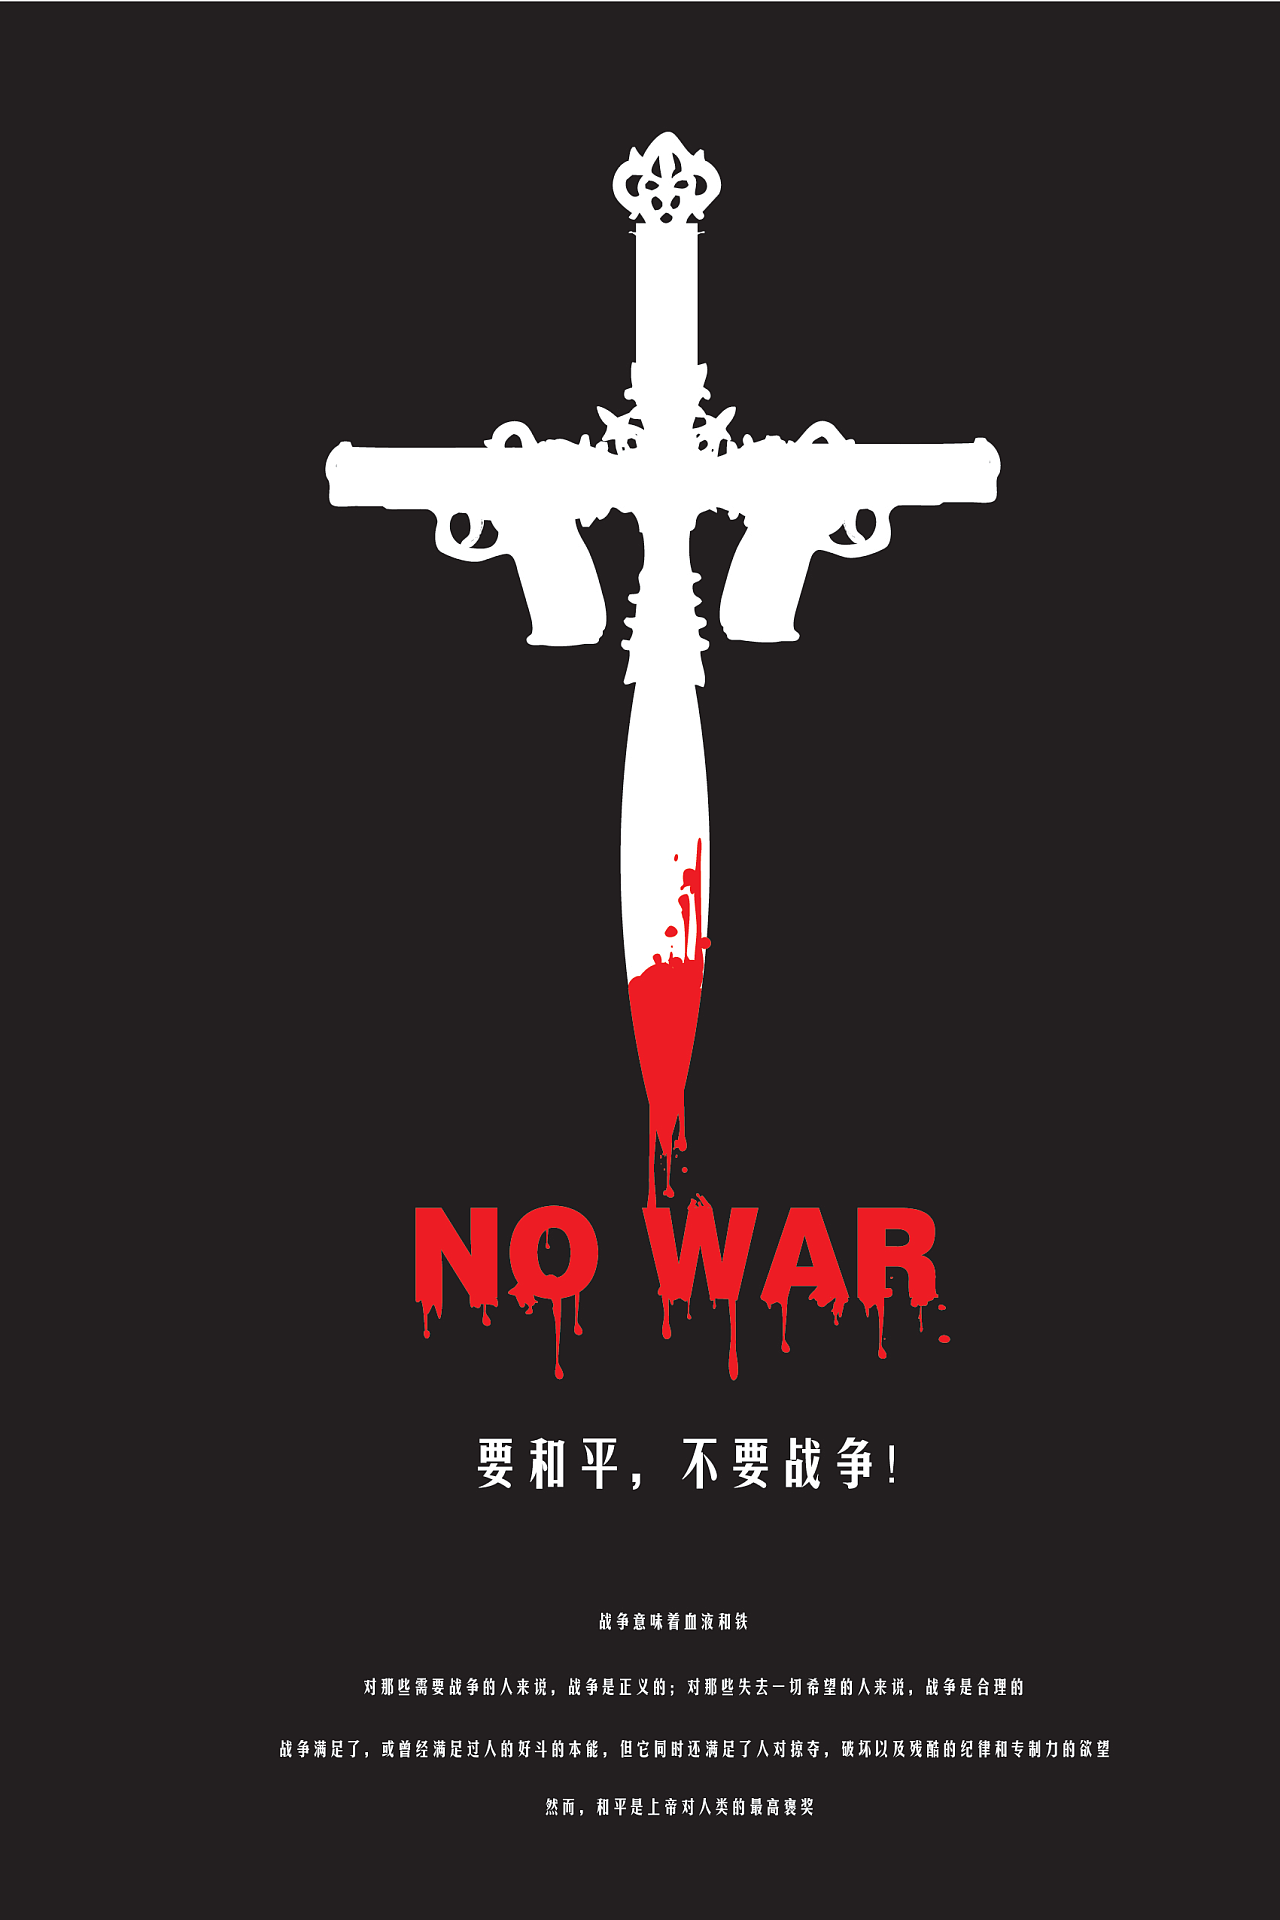 一个十字架,而十字架所代表的是和平,滴血的十字架呼吁我们反对战争